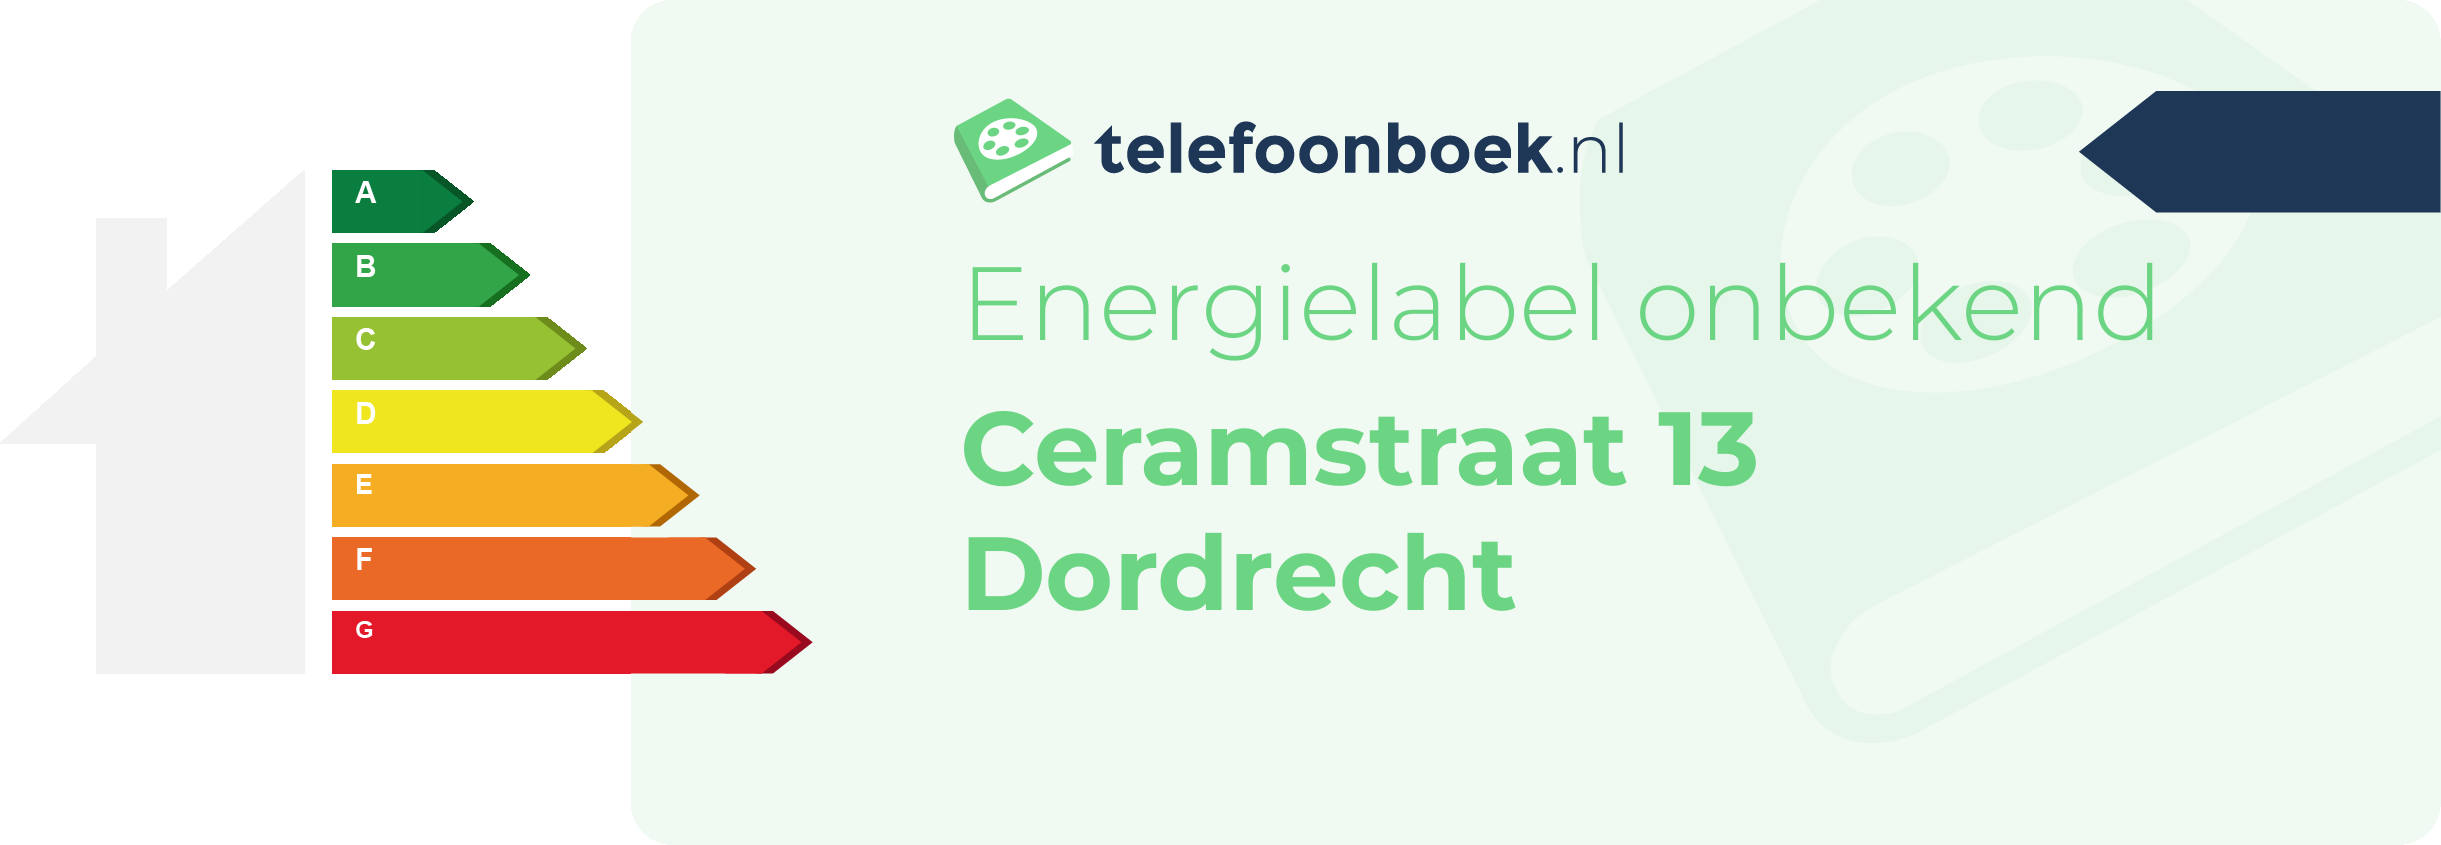 Energielabel Ceramstraat 13 Dordrecht